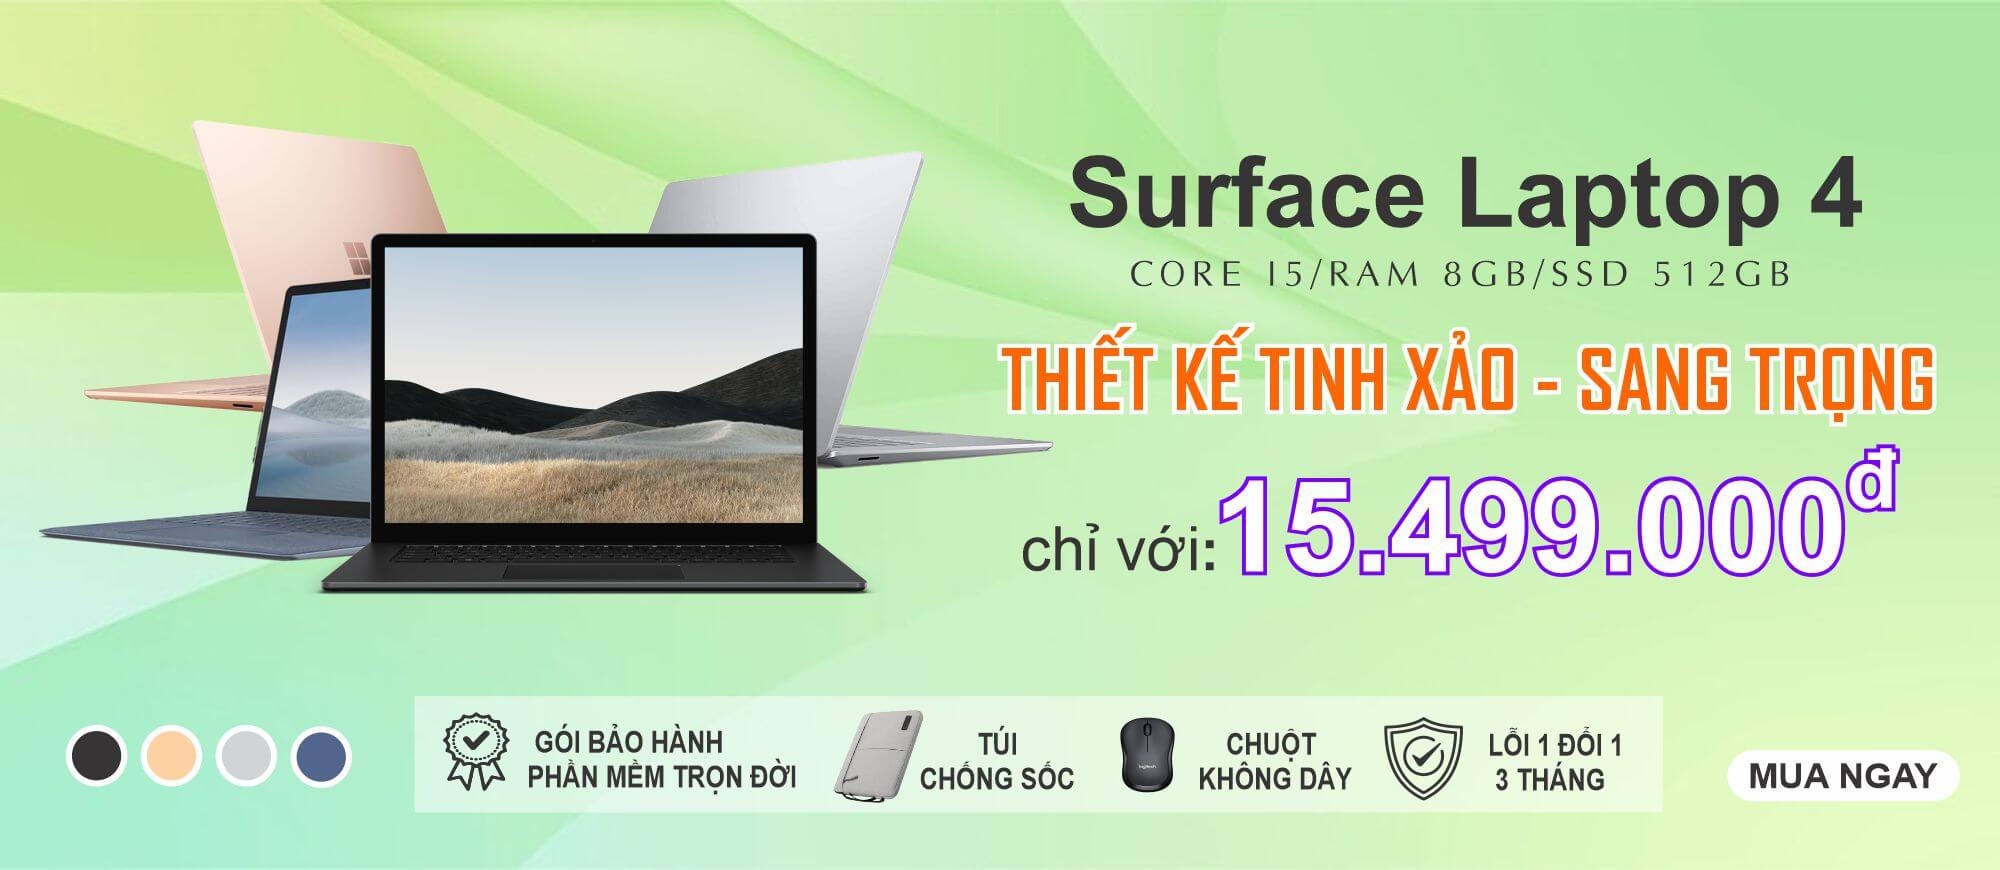 Khuyến mãi Surface Laptop 4 core i5 8gb 512gb